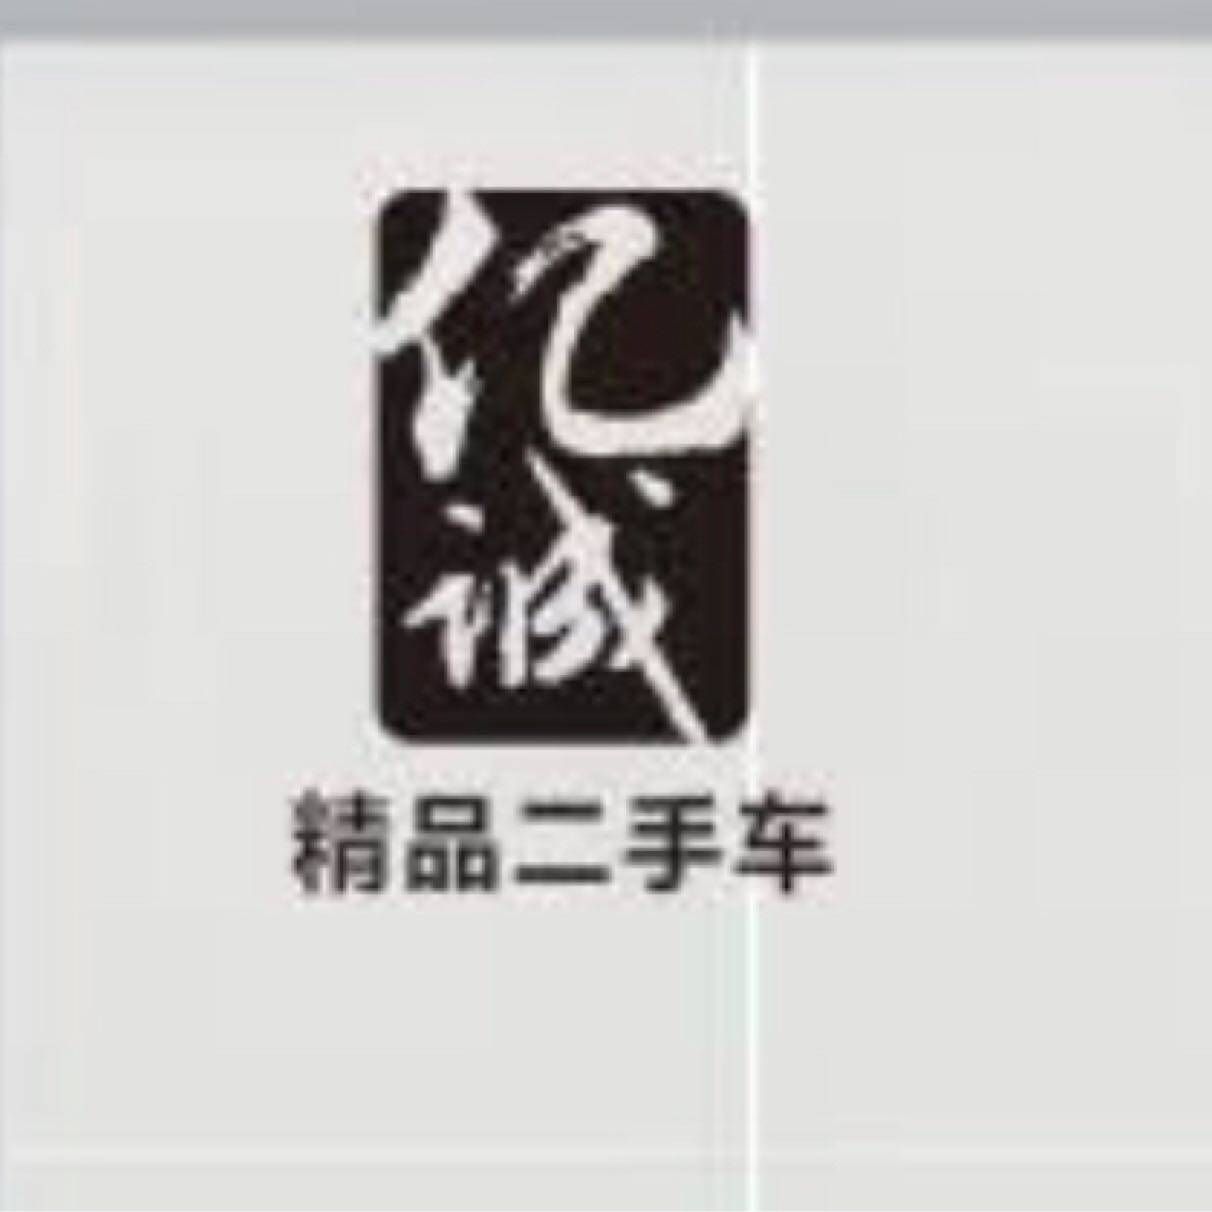 东莞市常平新亿诚汽车服务部logo